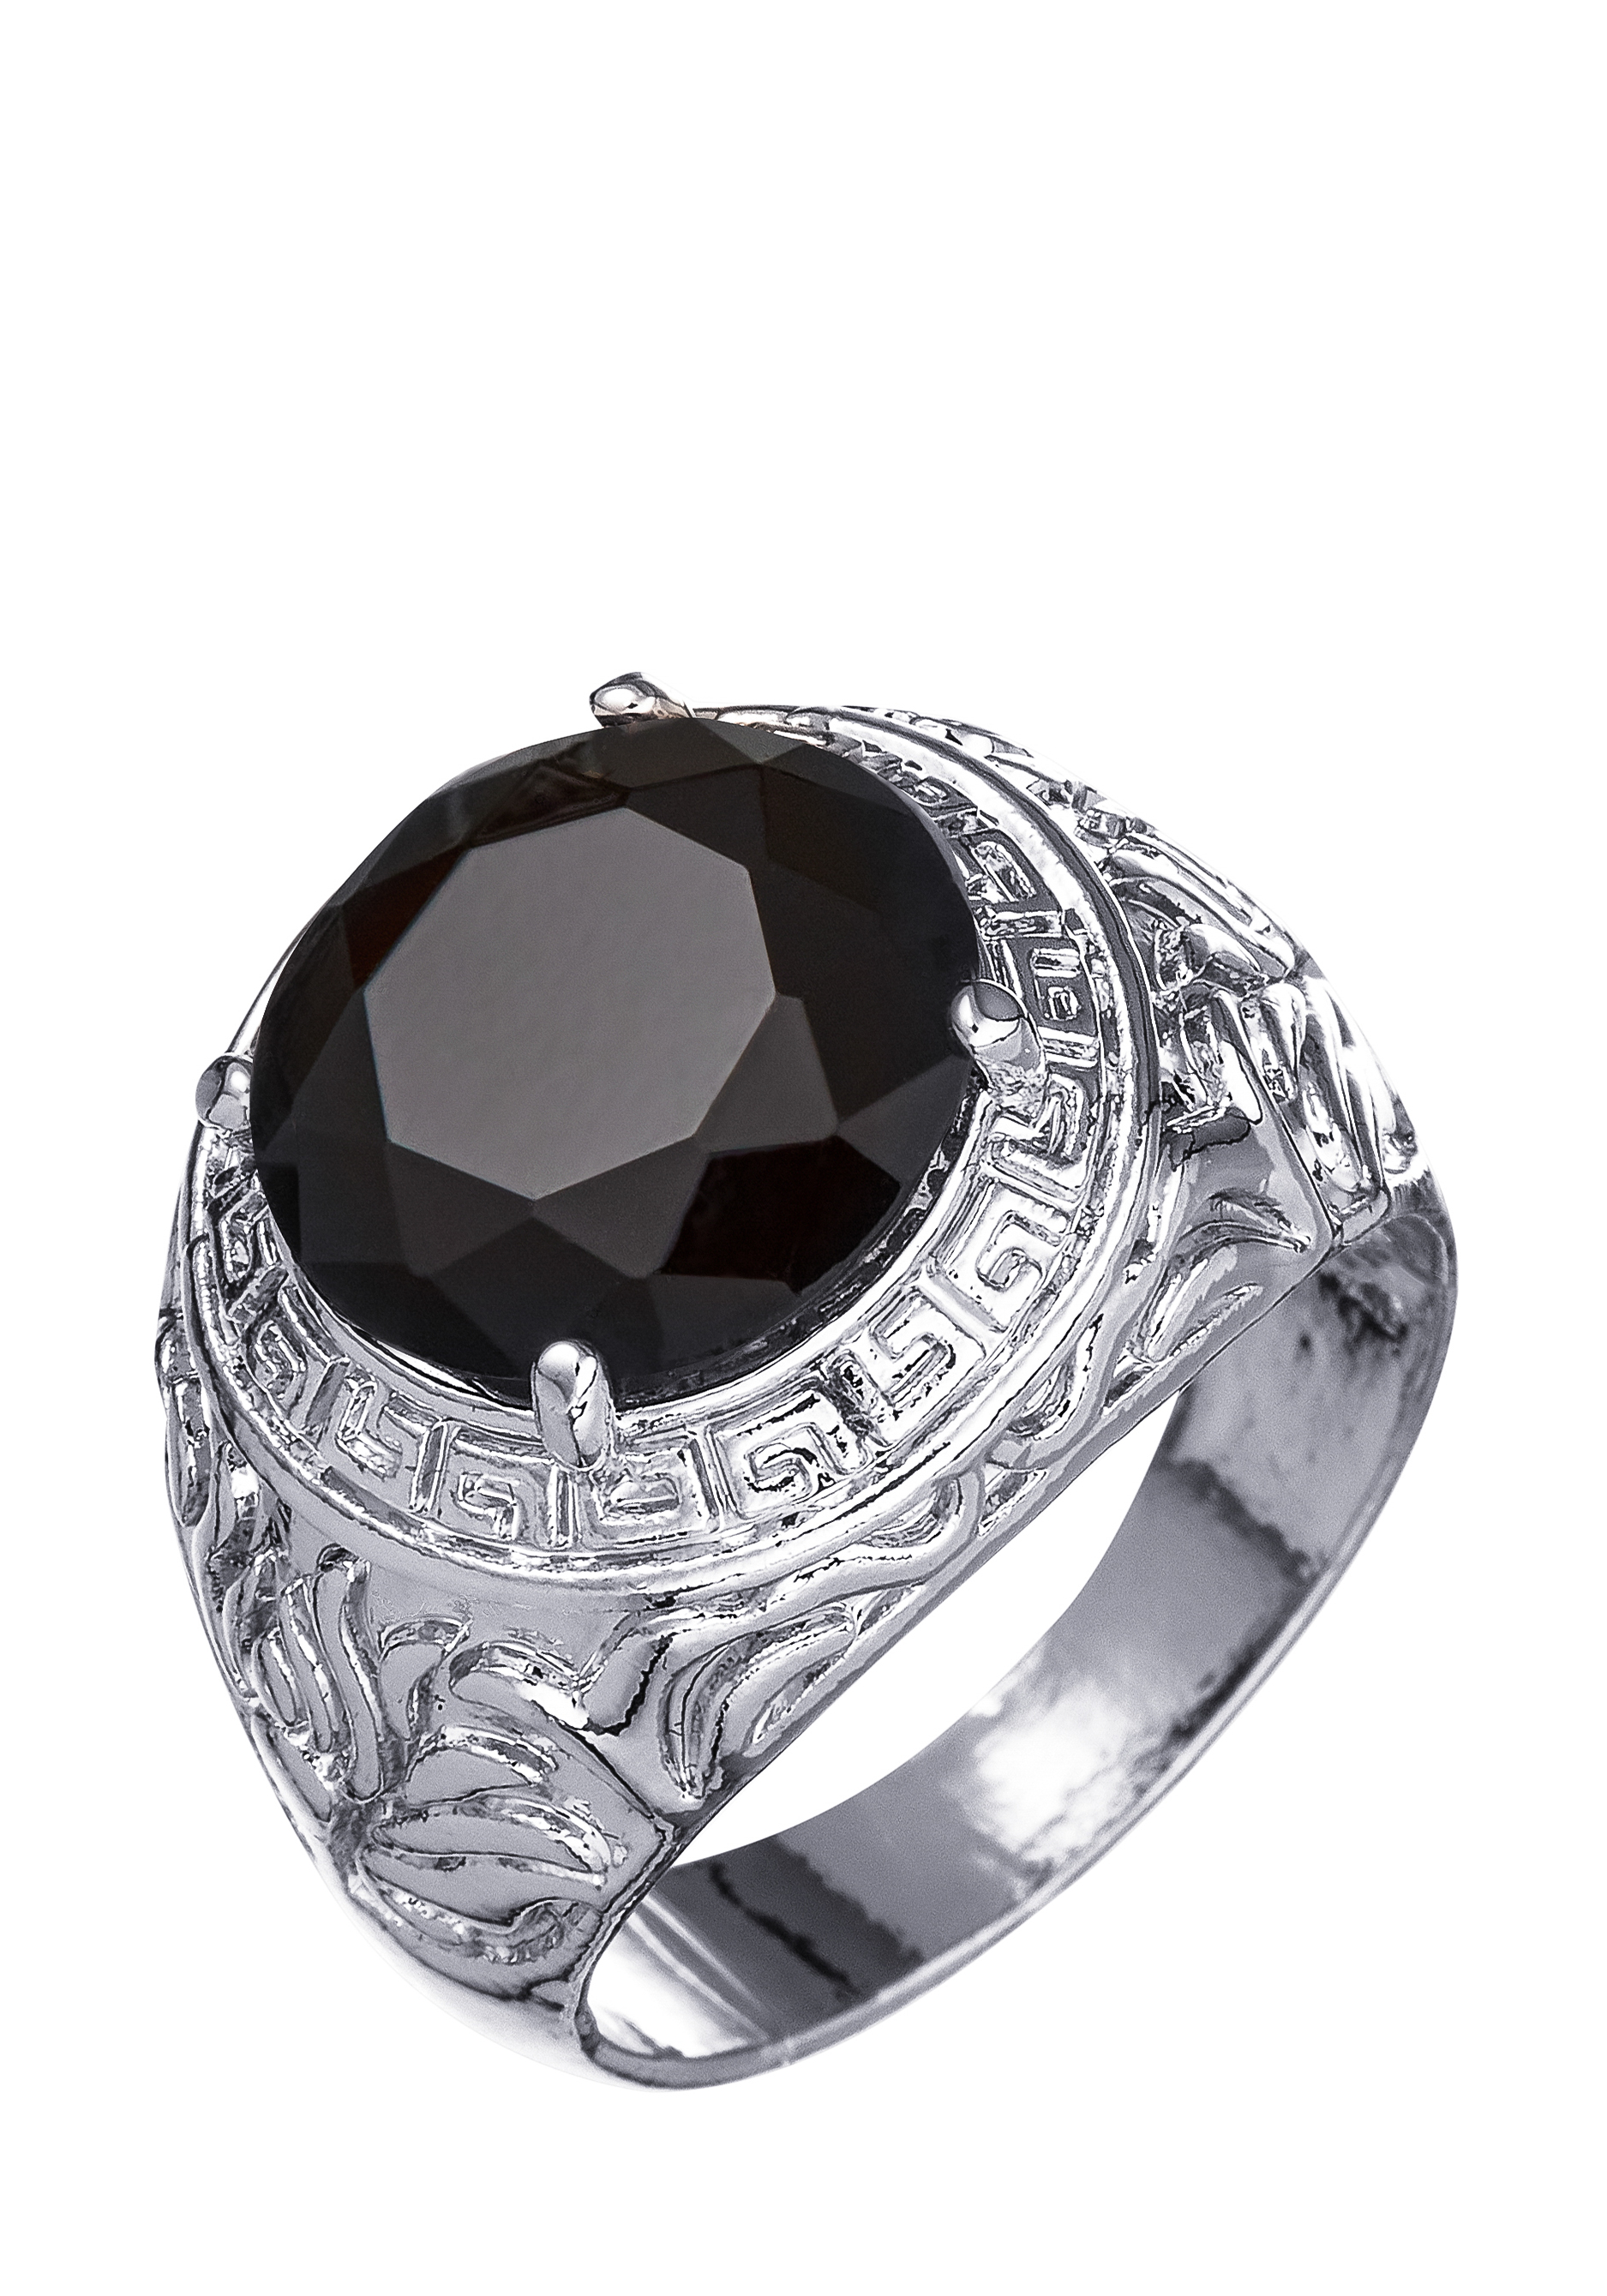 Комплект "Загадочная ночь" Apsara, цвет черный, размер 18 перстень - фото 7